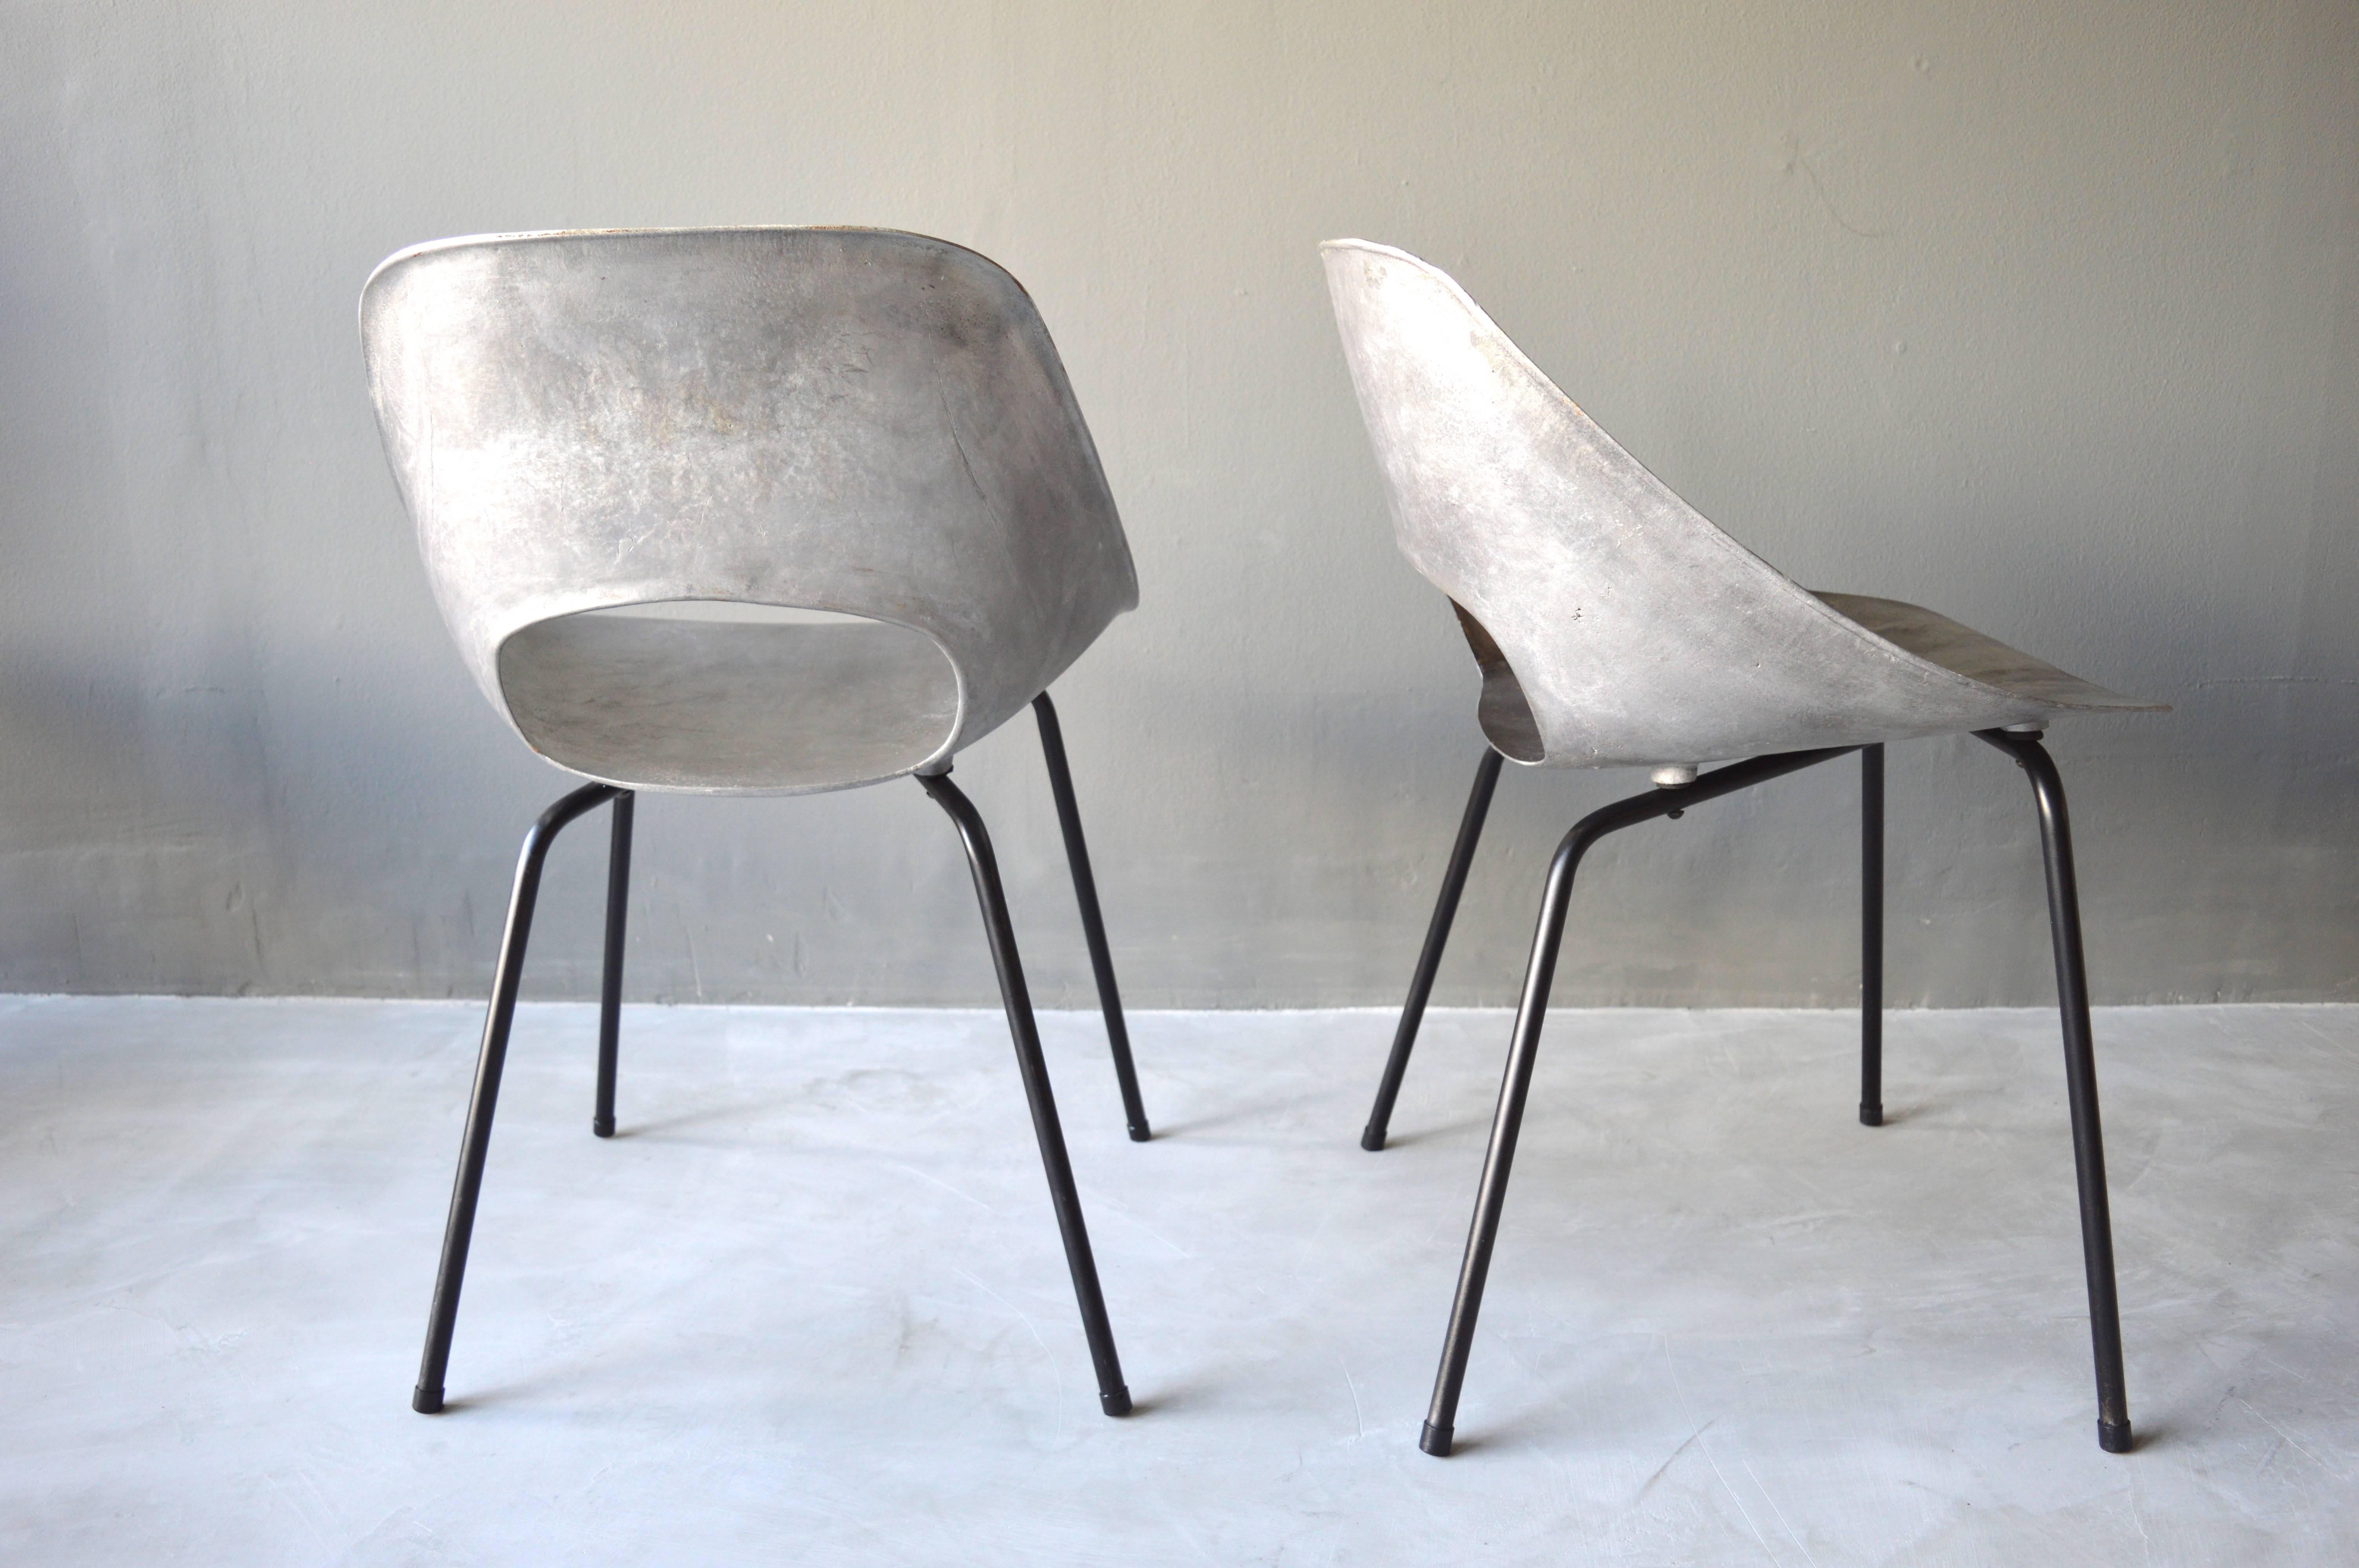 Cast Aluminum Chairs by Pierre Guariche 1